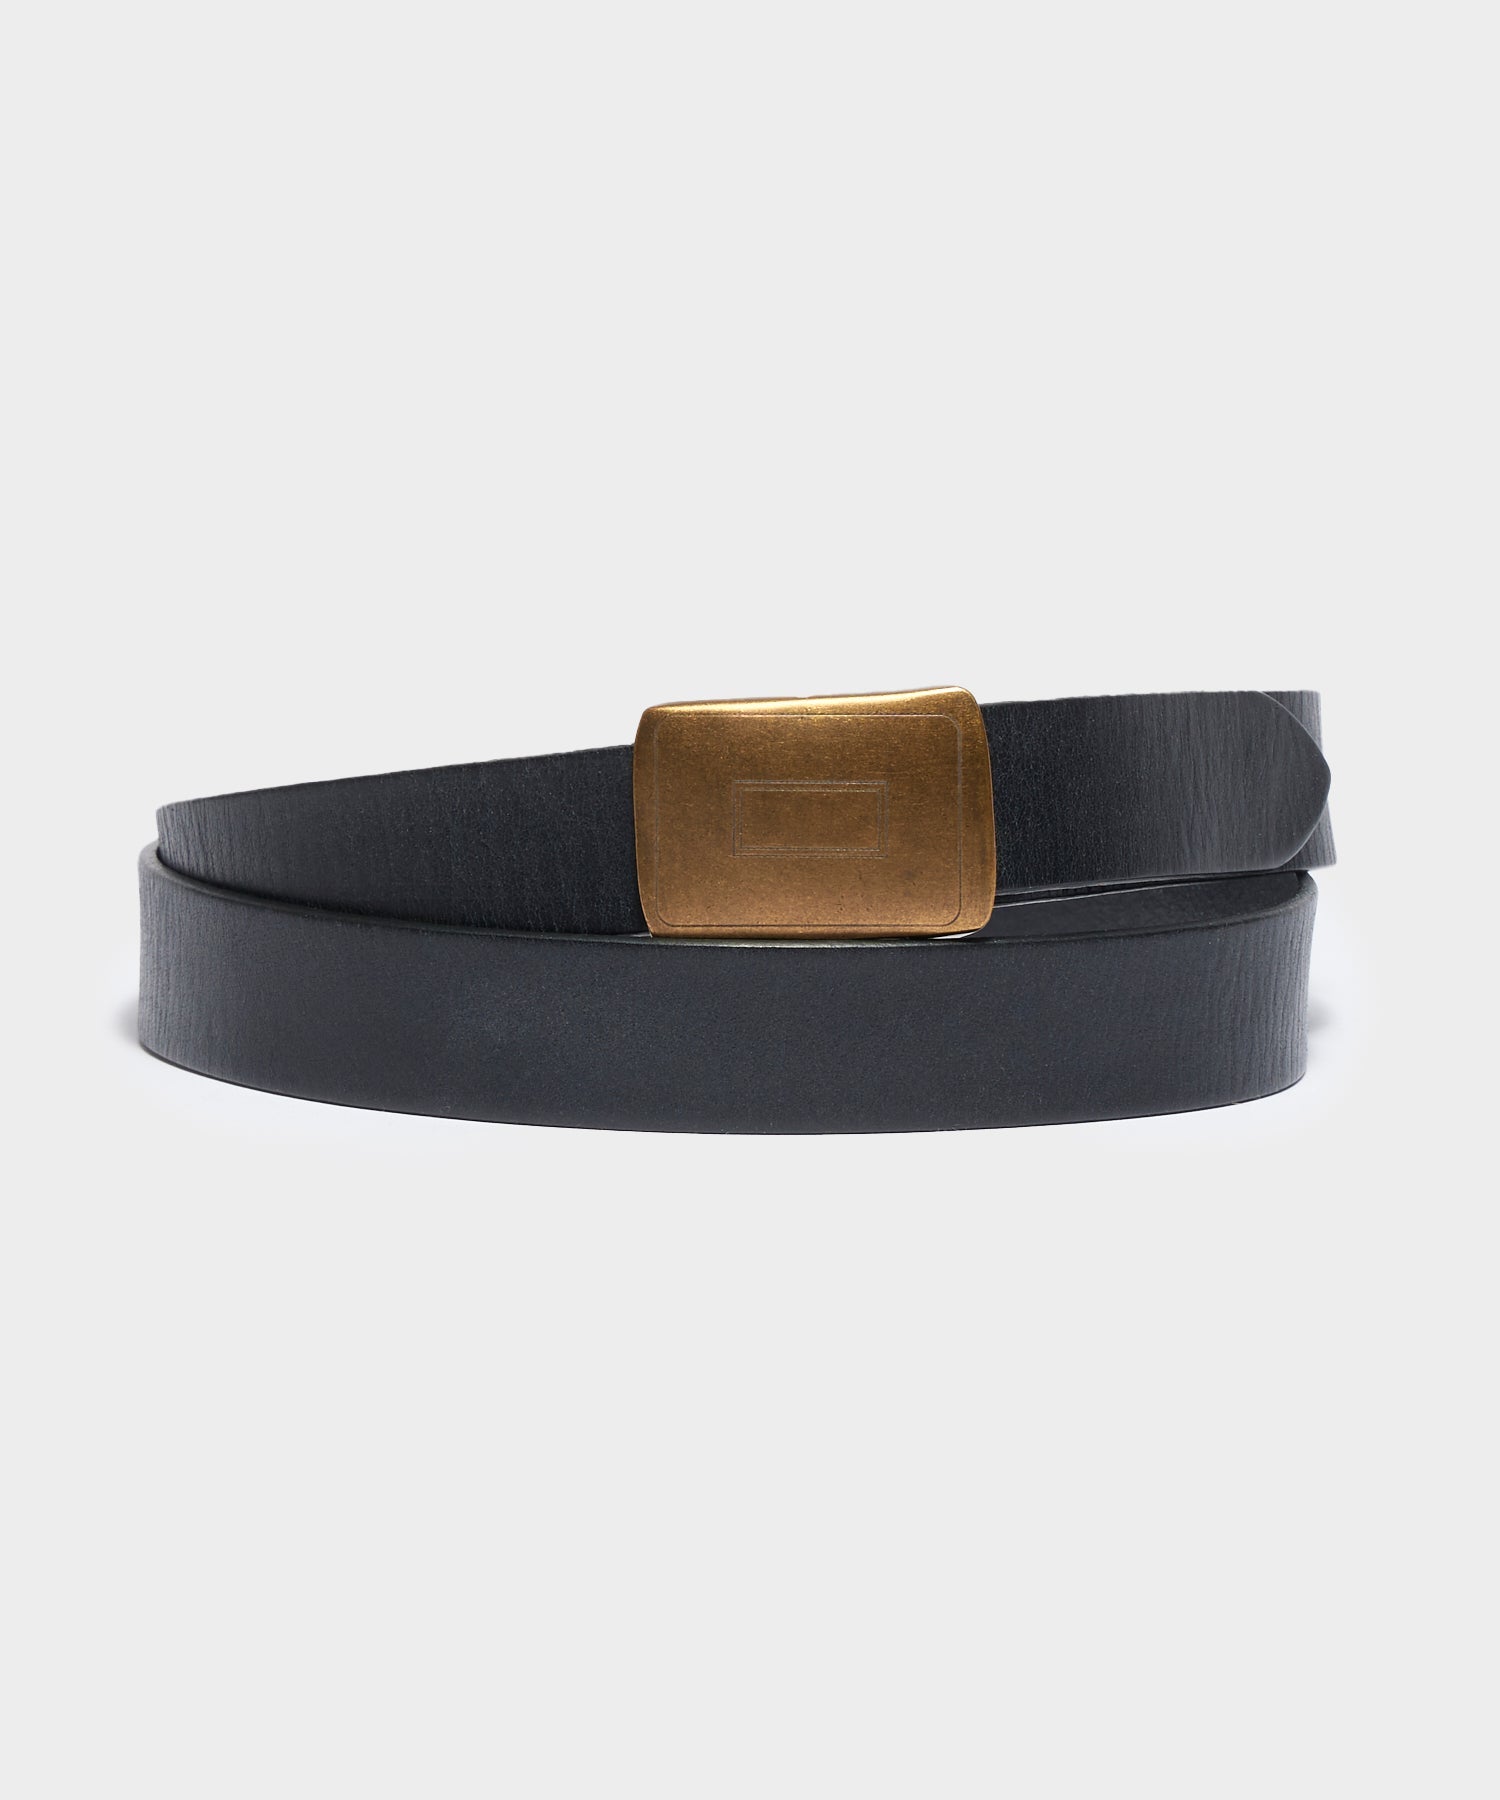 Vintage Leather Belt in Black